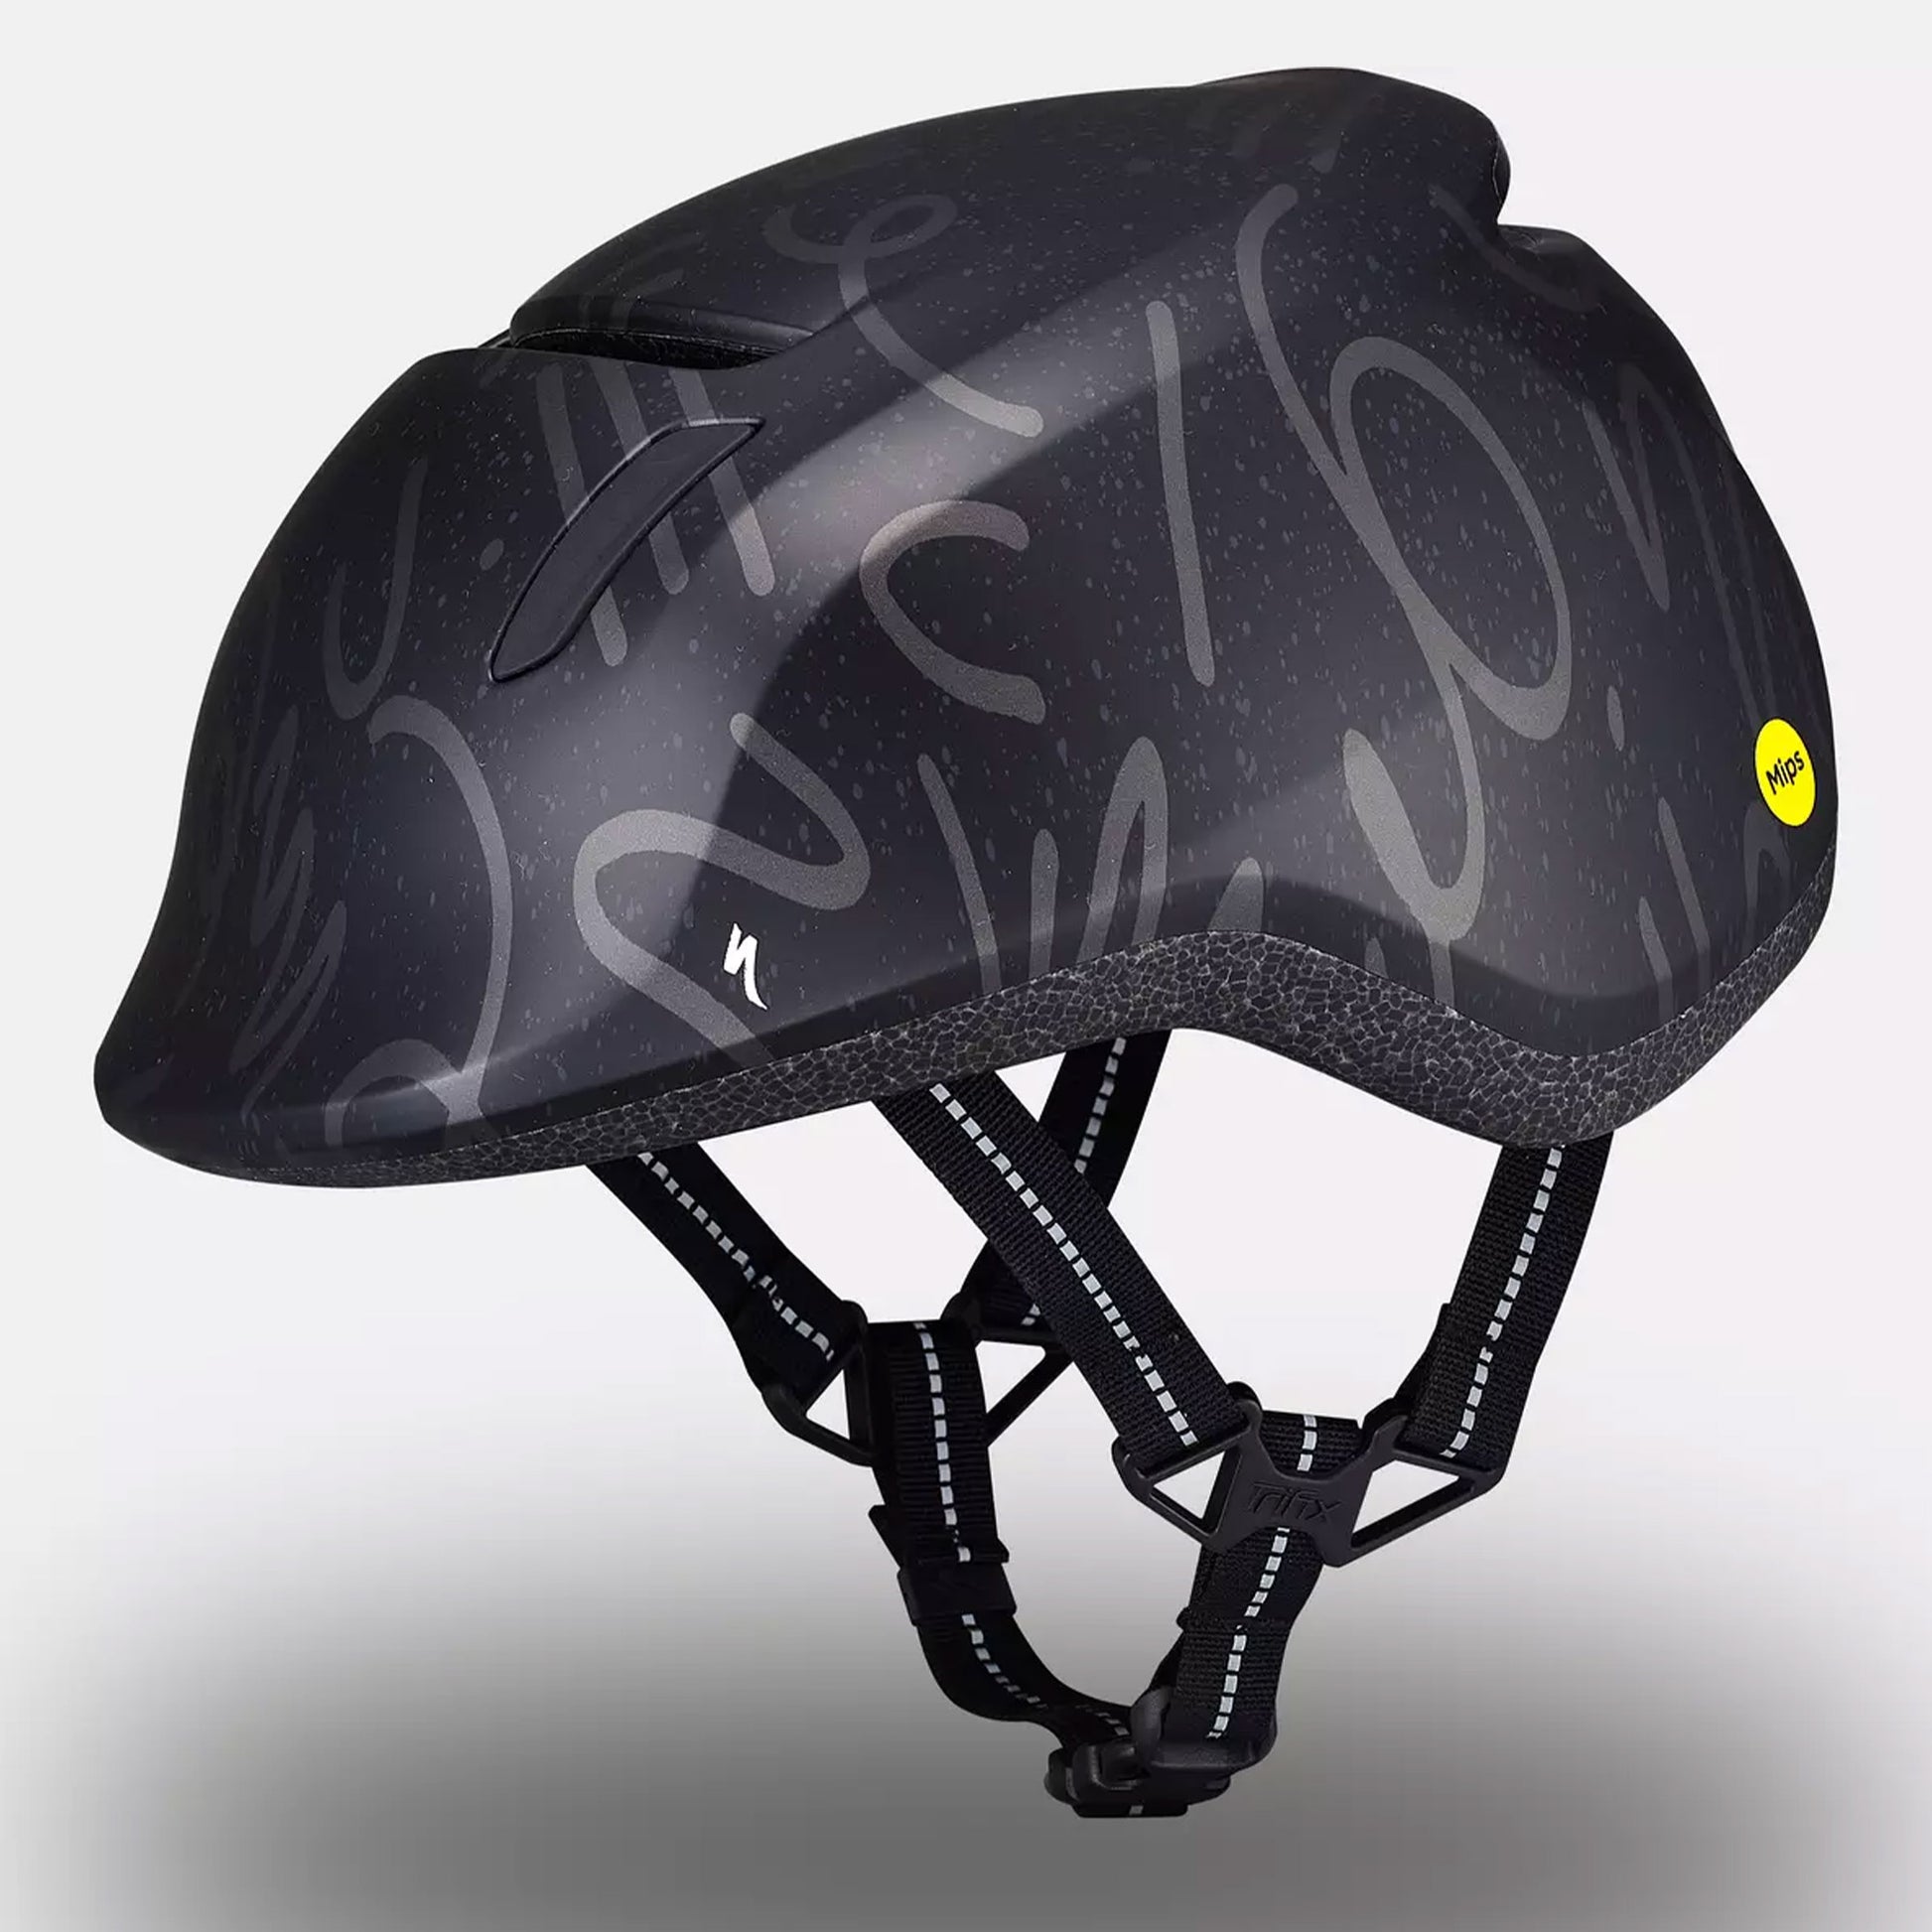 Specialized Mio 2 Mips Children's Helmet - Black/Smoke Graphic